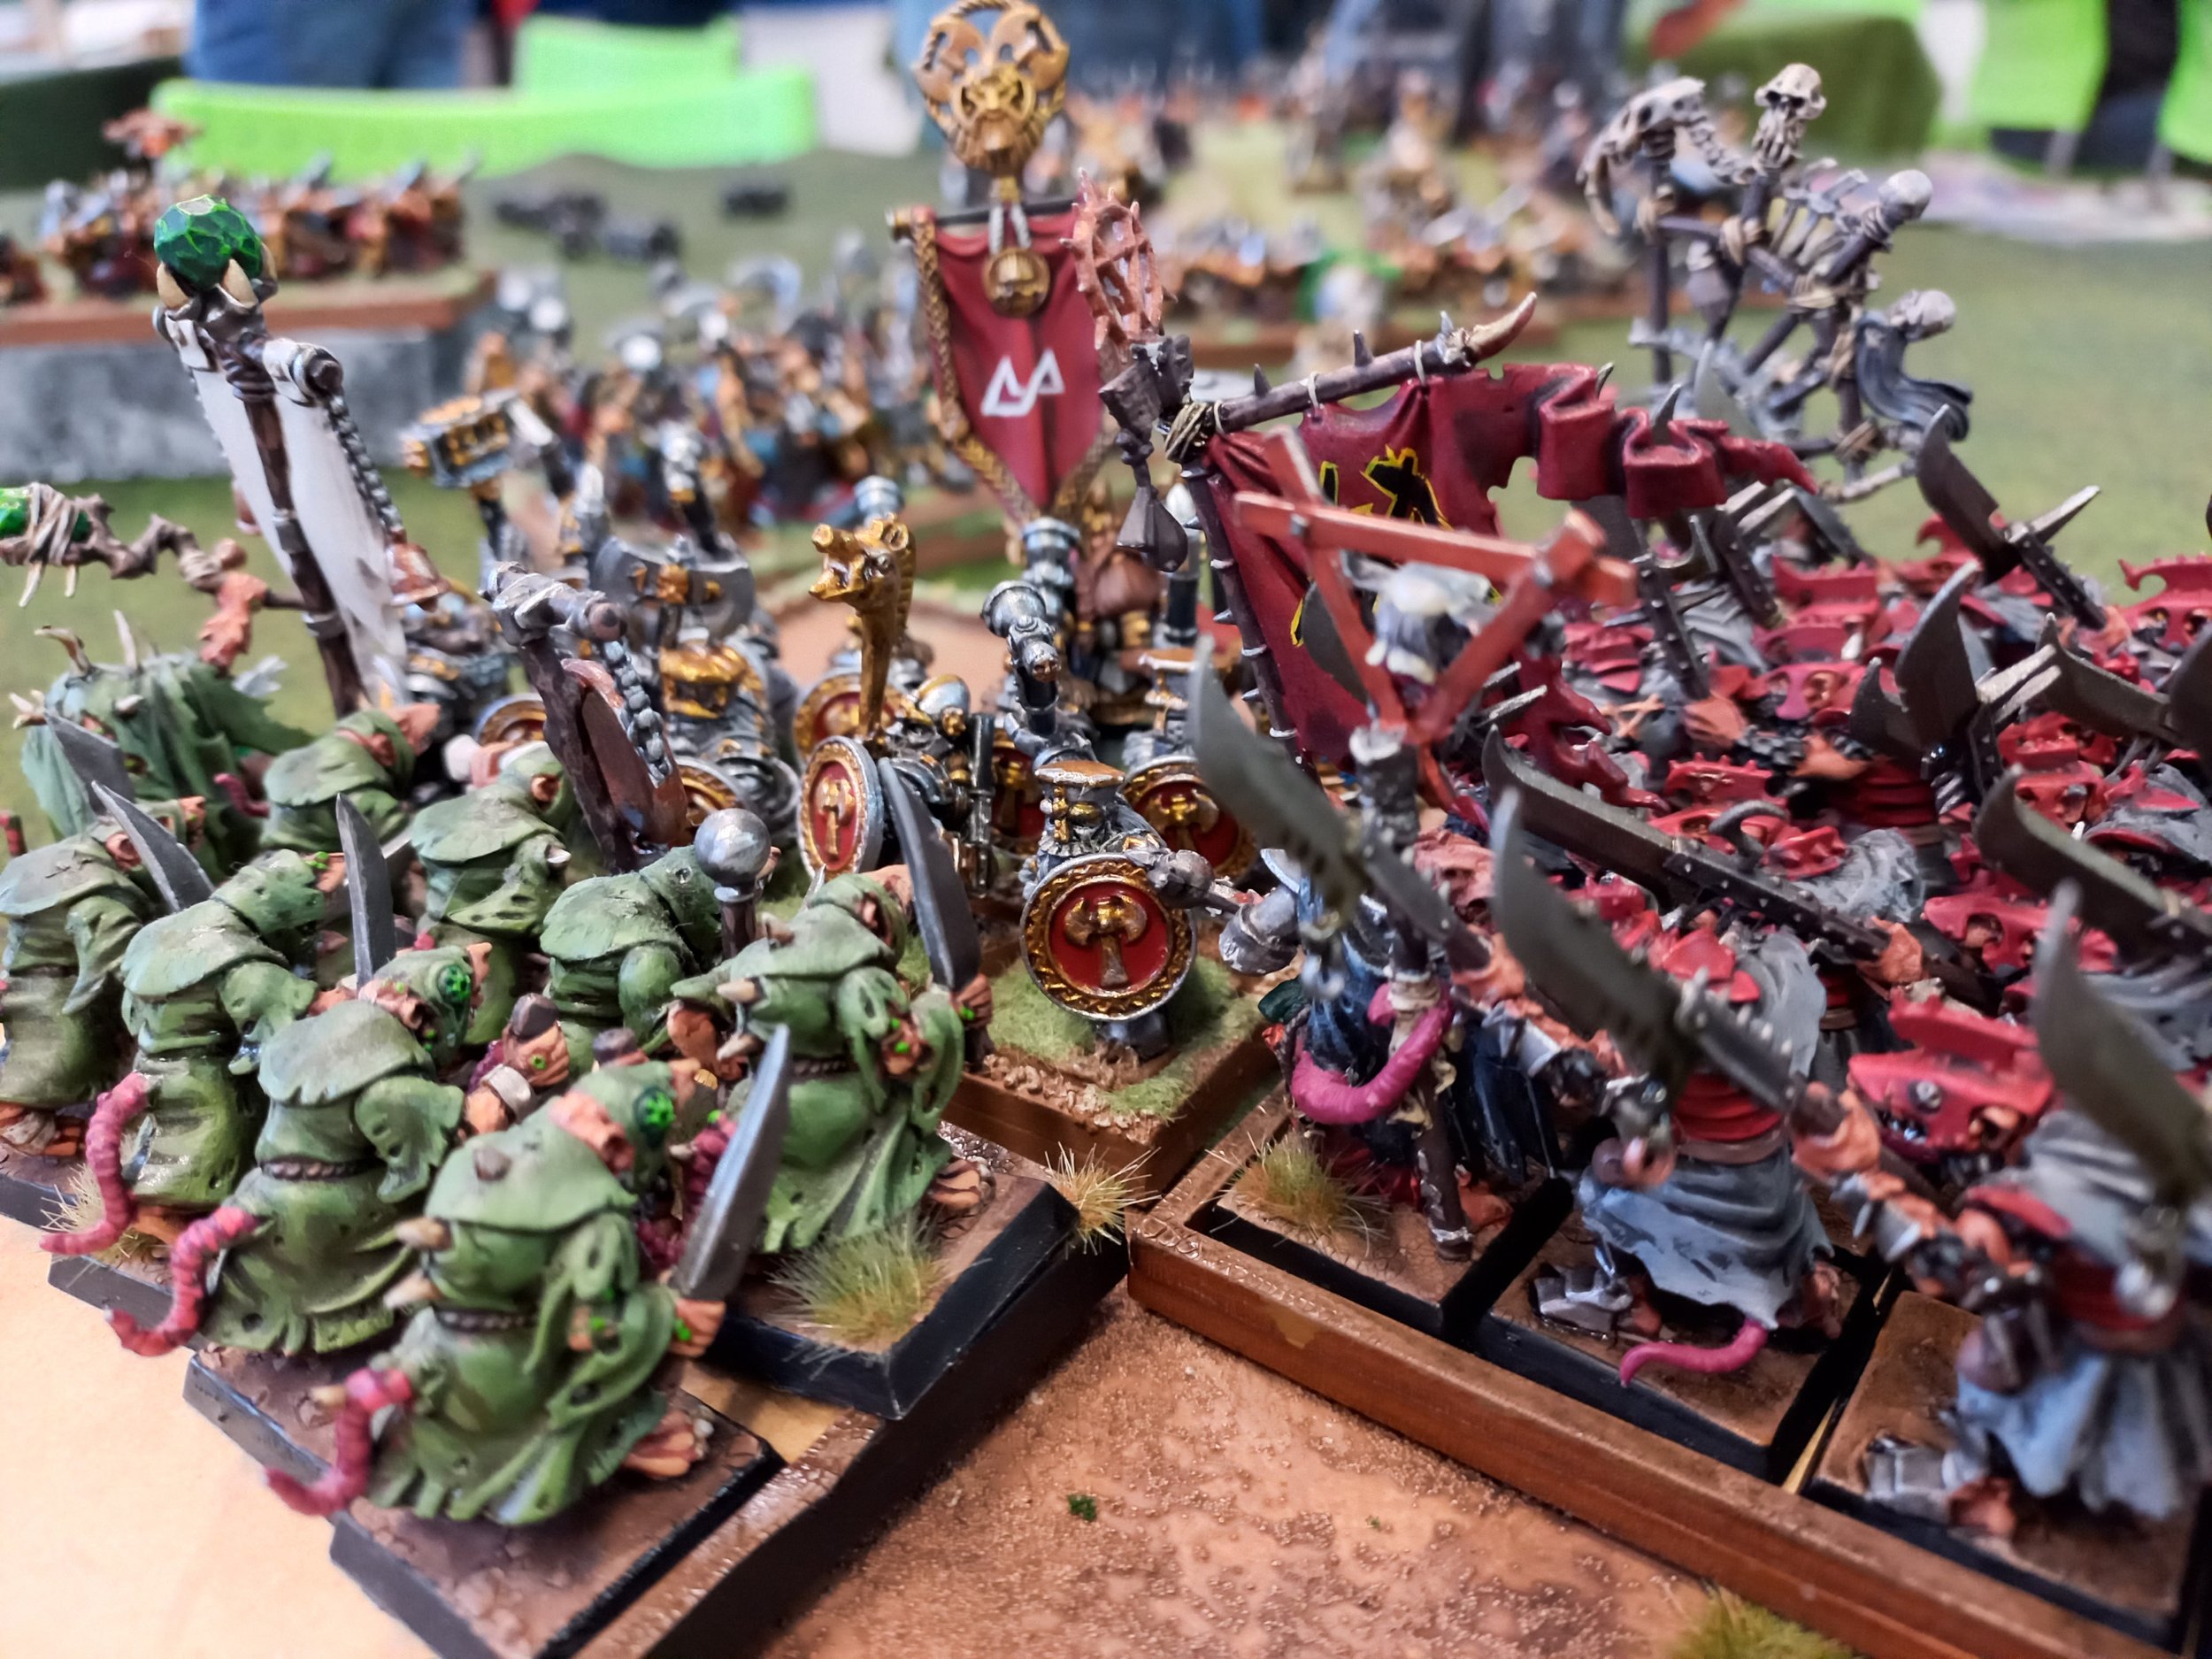  Warhammer, the Skaven hordes overrun the Dwarves 